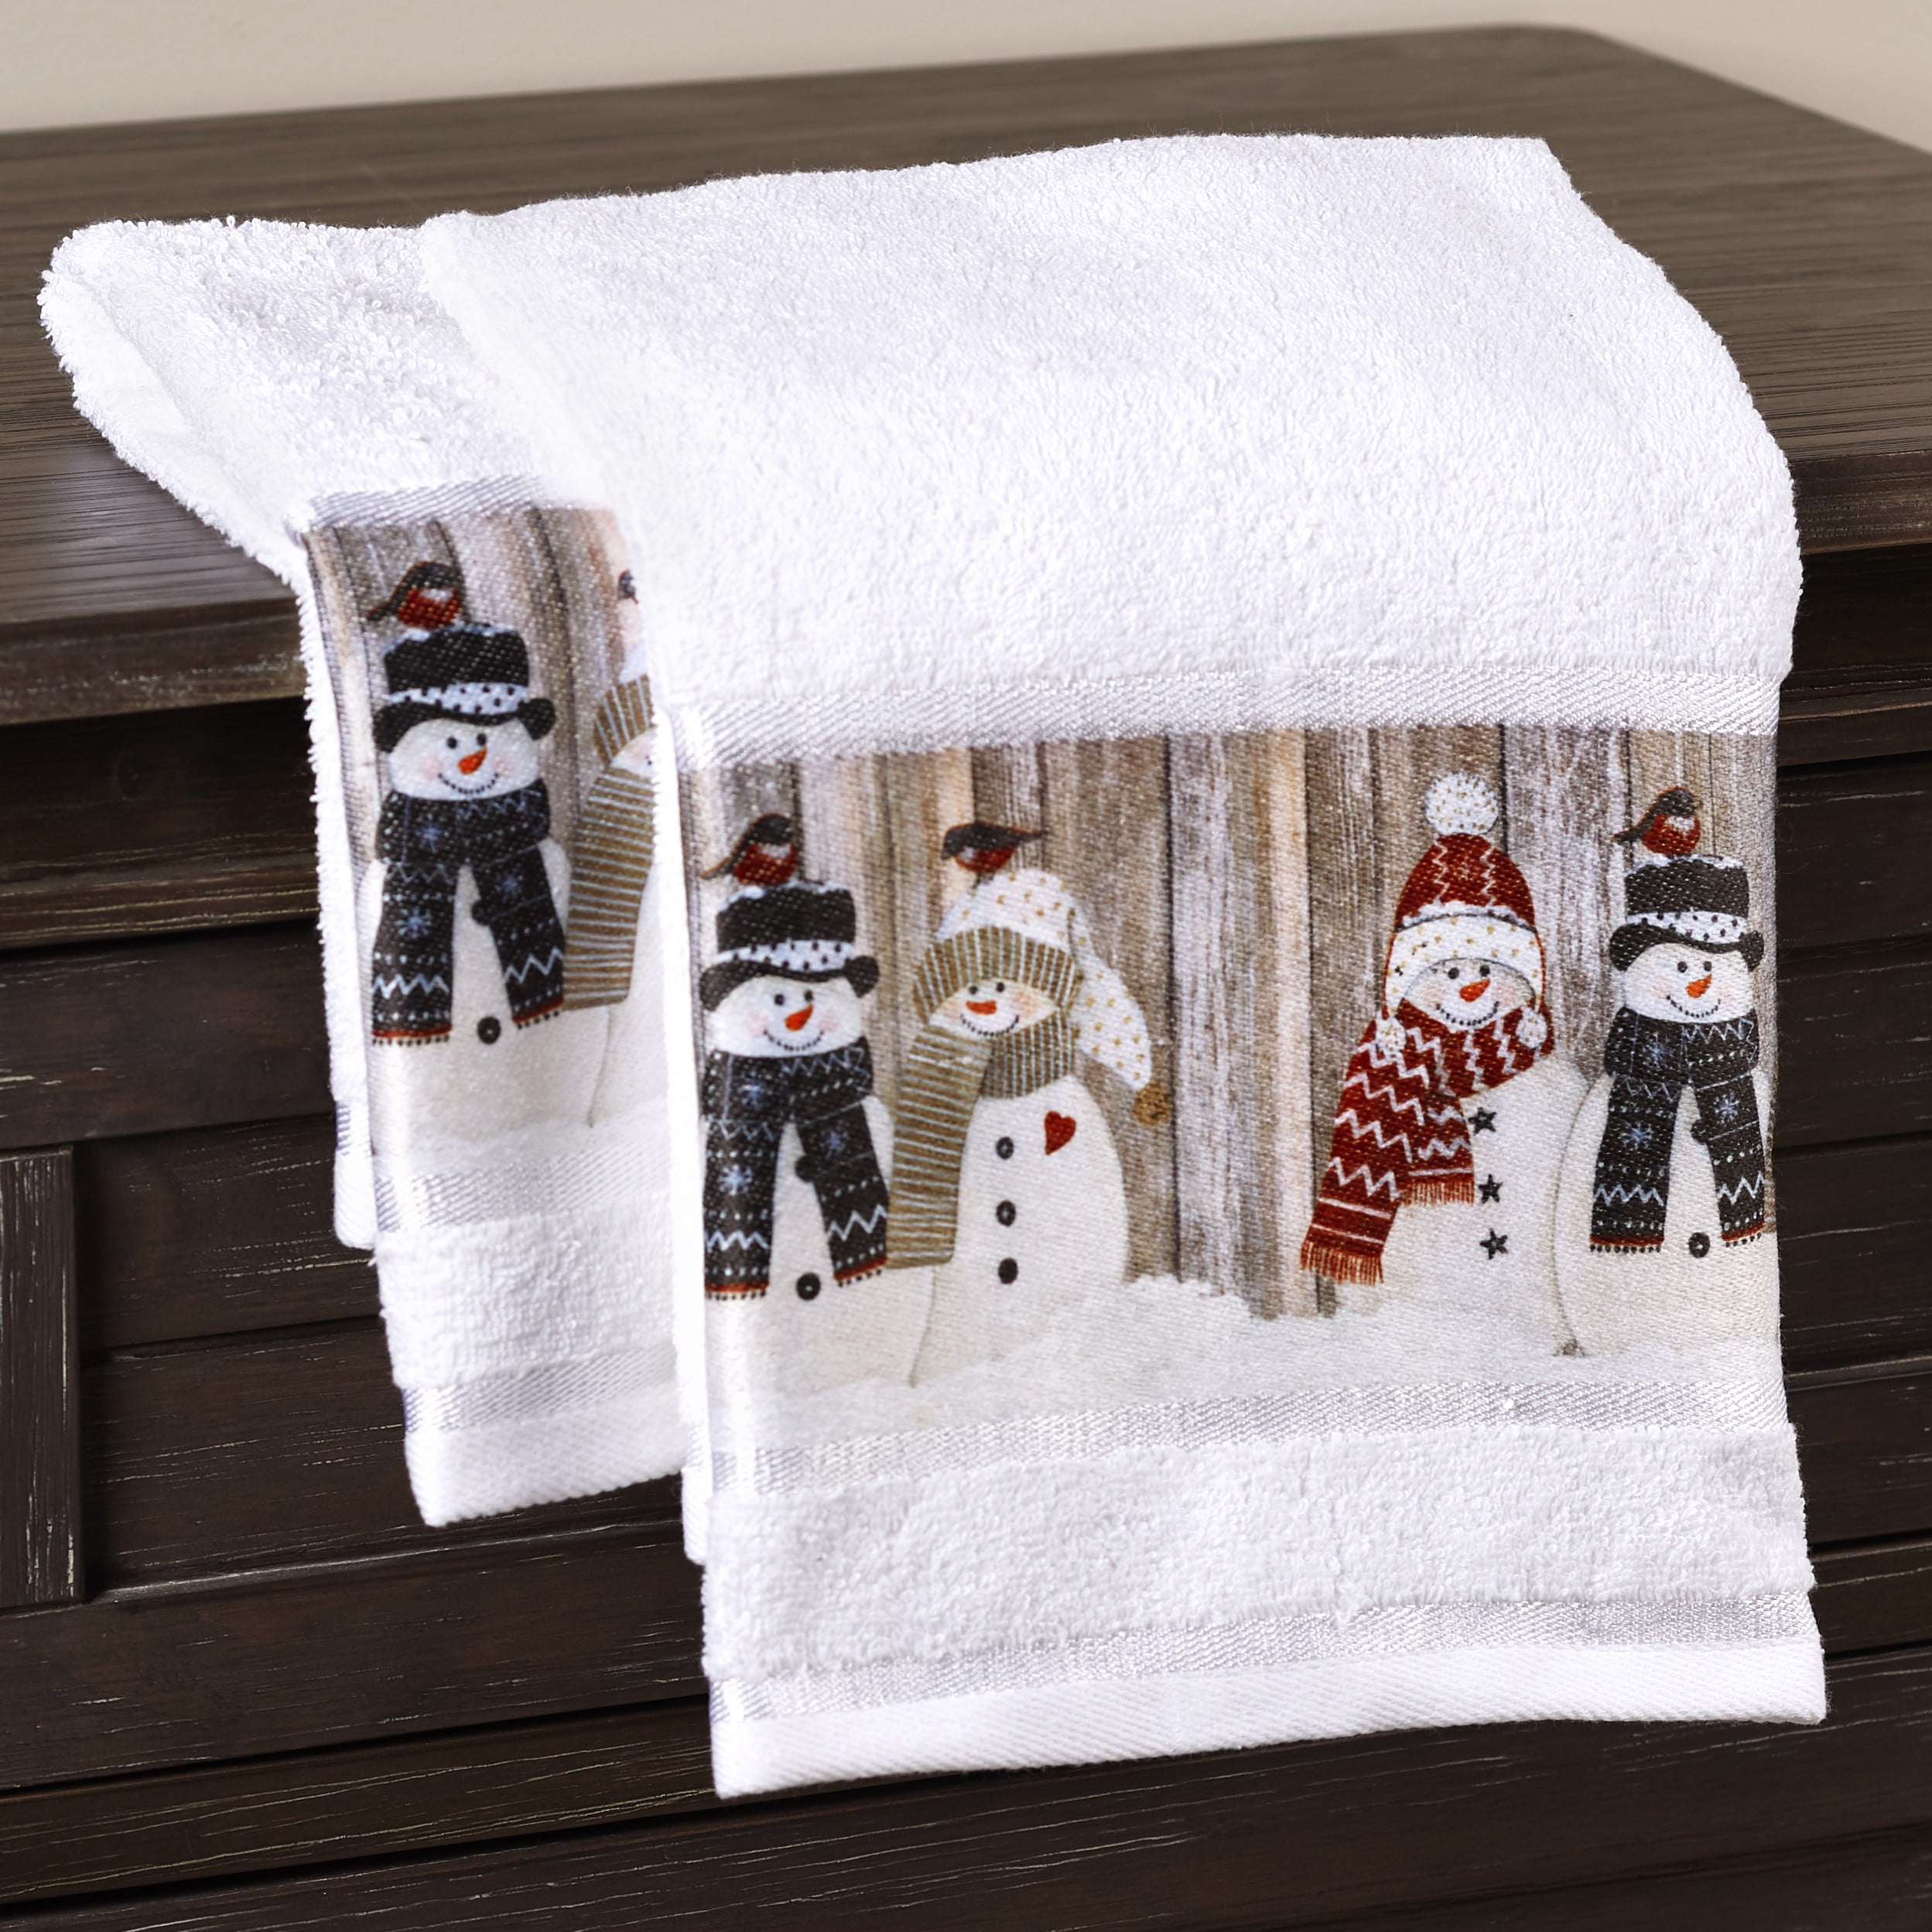 Christmas Gray & White Skiing Snowman Cotton Kitchen Towels NWT 